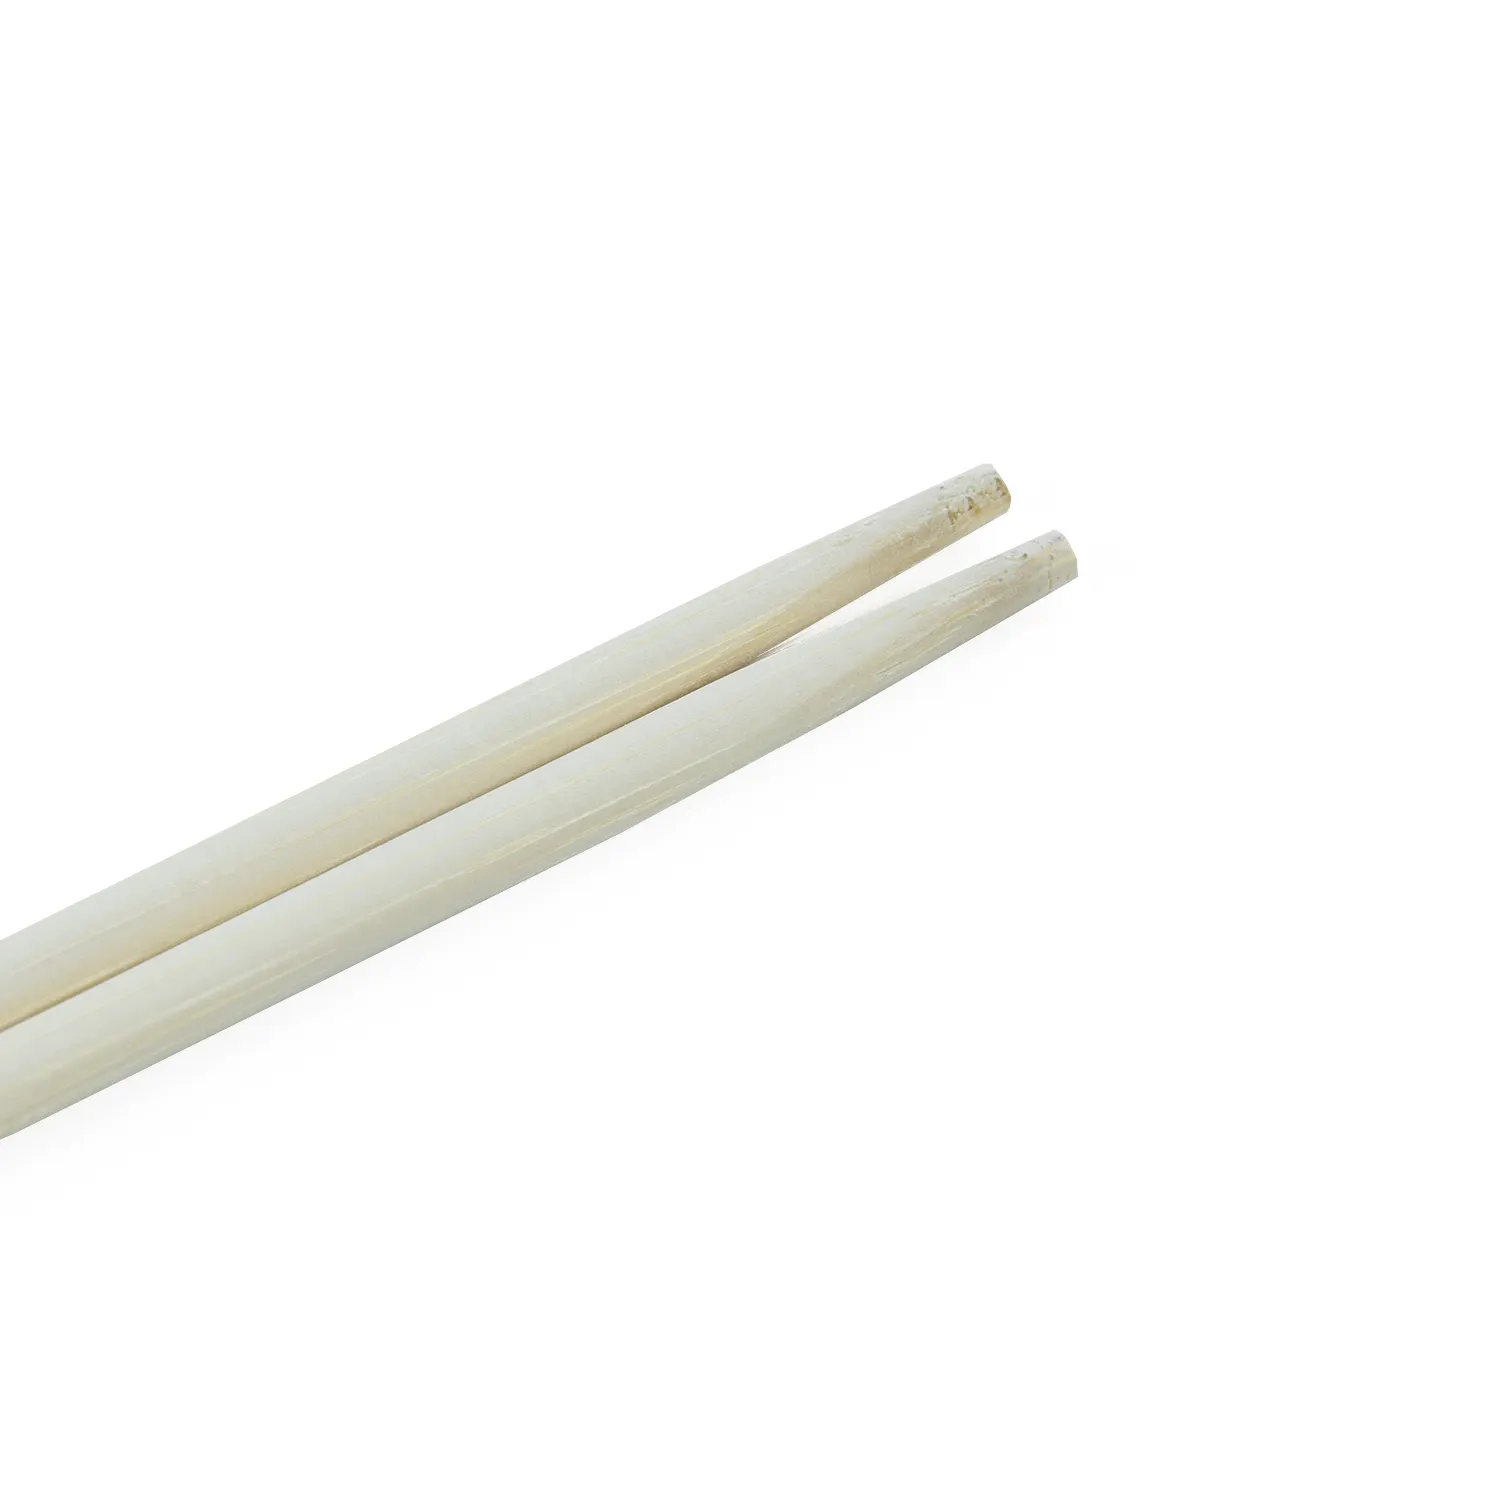 Pauzinhos de bambu descartáveis personalizados chineses para levar comida em massa, pauzinhos de bambu para gêmeos com tampa de papel